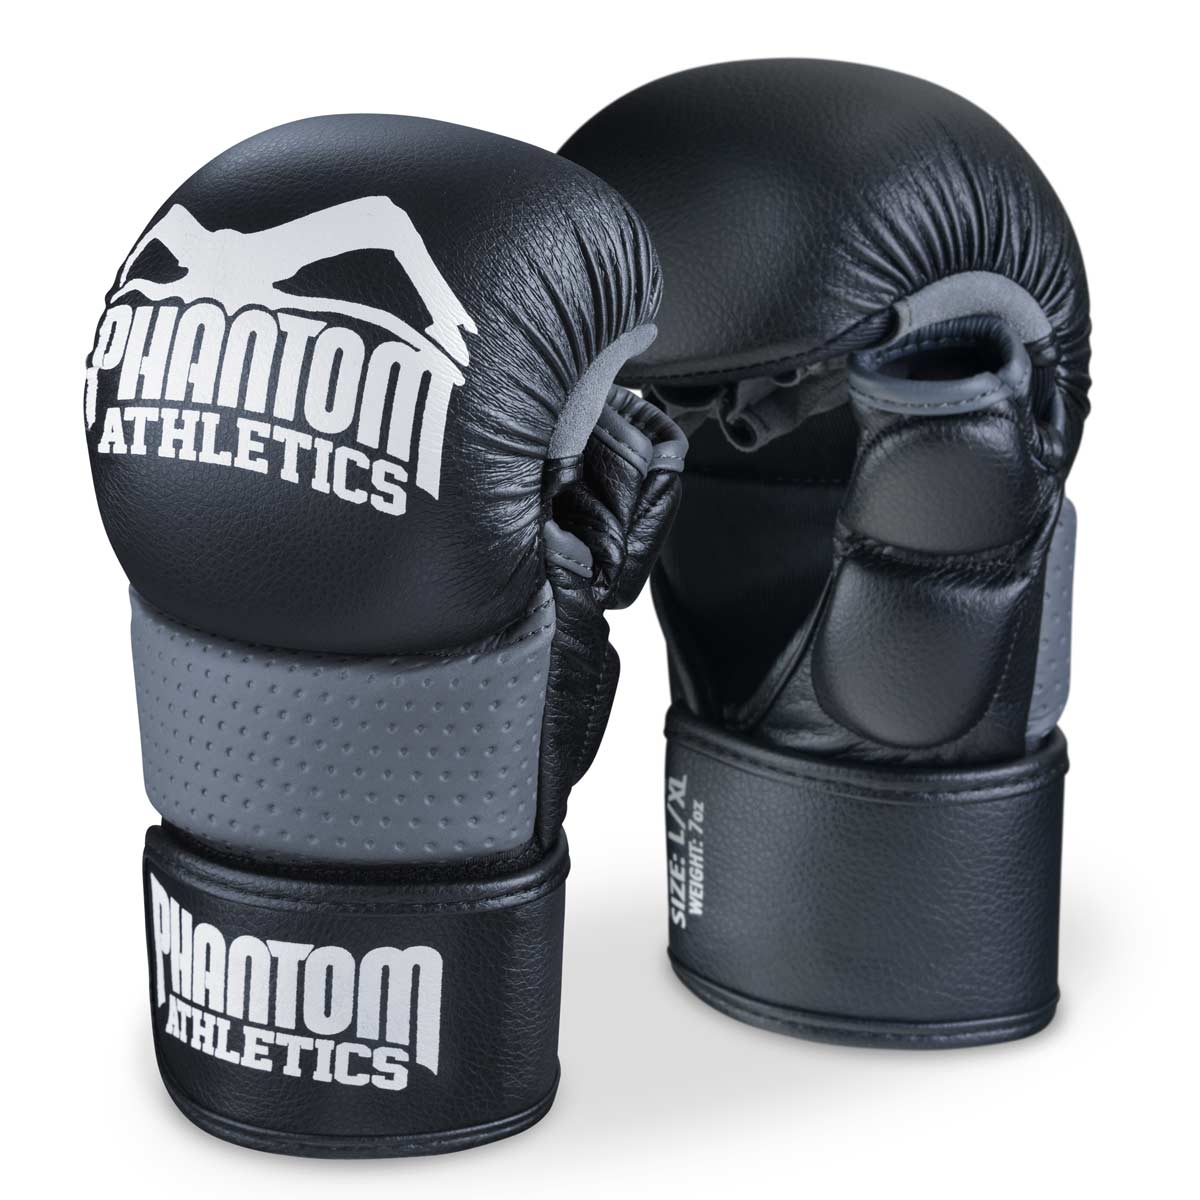 Die Phantom RIOT MMA Sparringshandschuhe - die sichersten Handschuhe für dein MMA Training